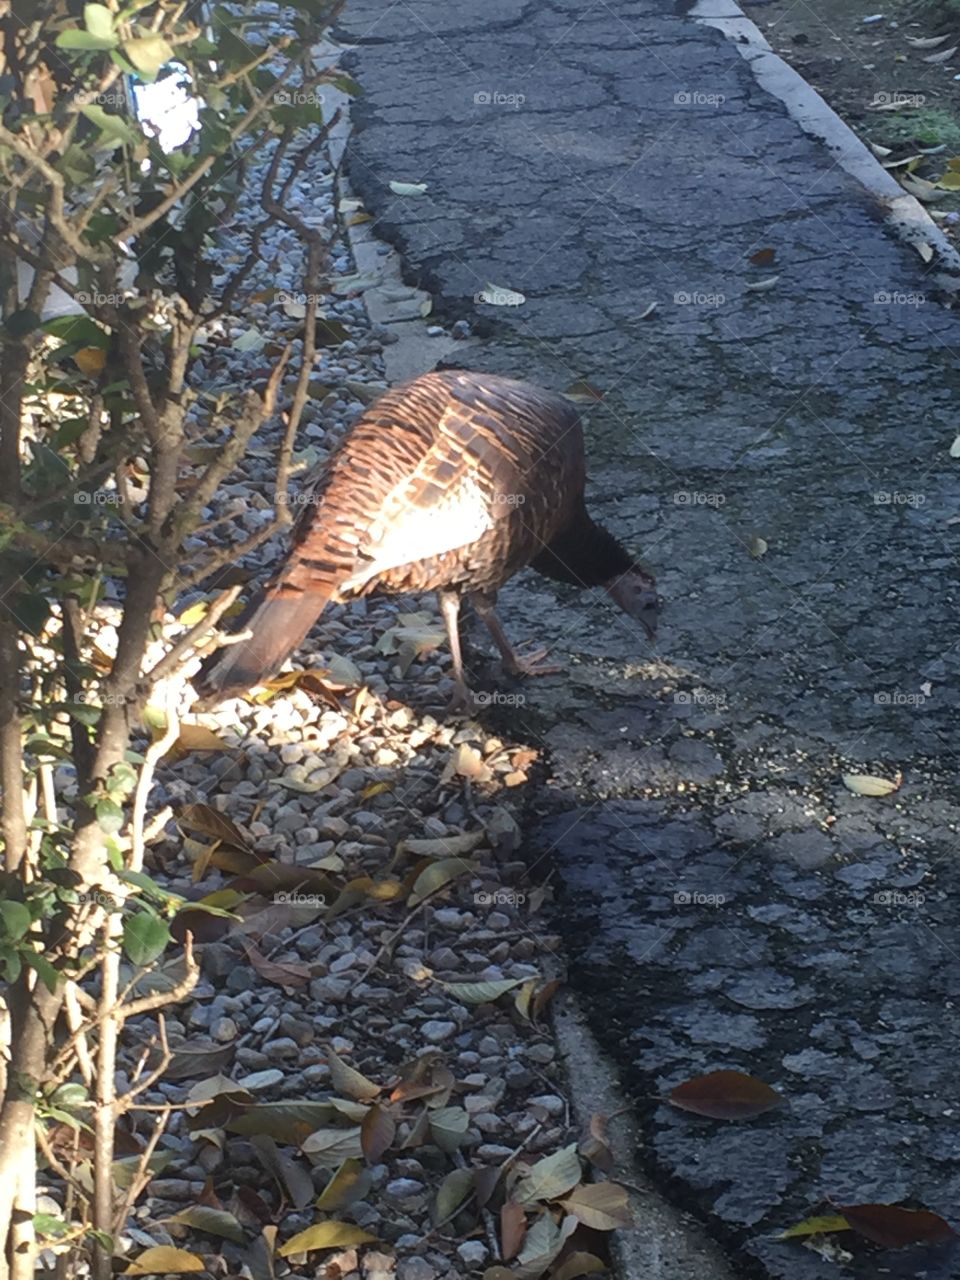 Wild turkey on the loose on Thanksgiving 